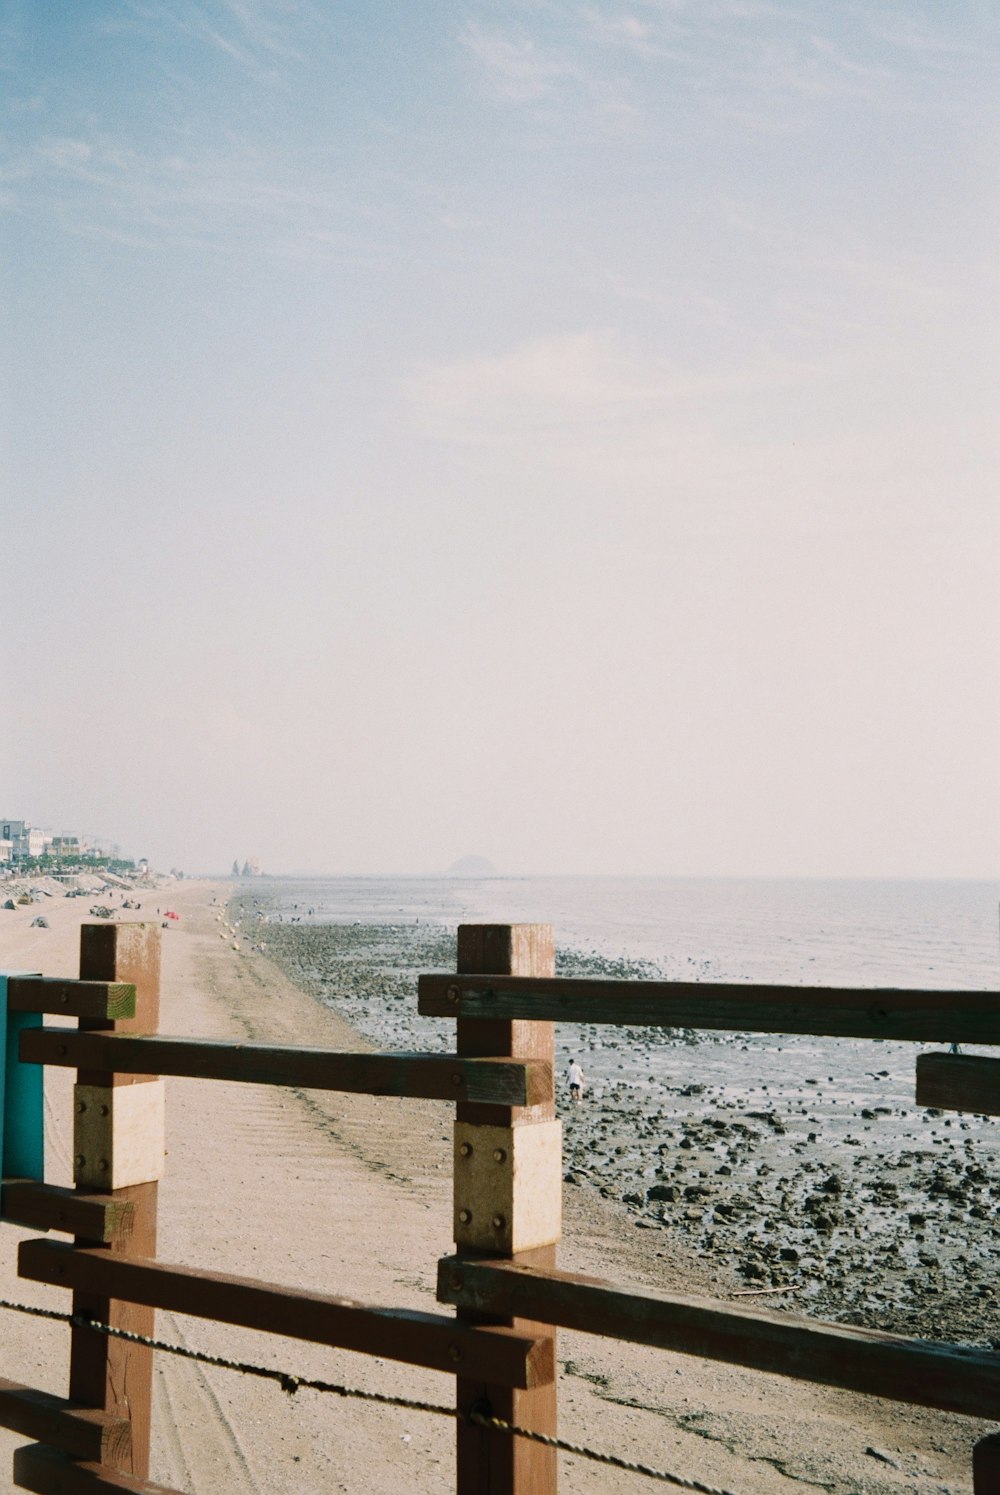 a wooden railing overlooking a beach